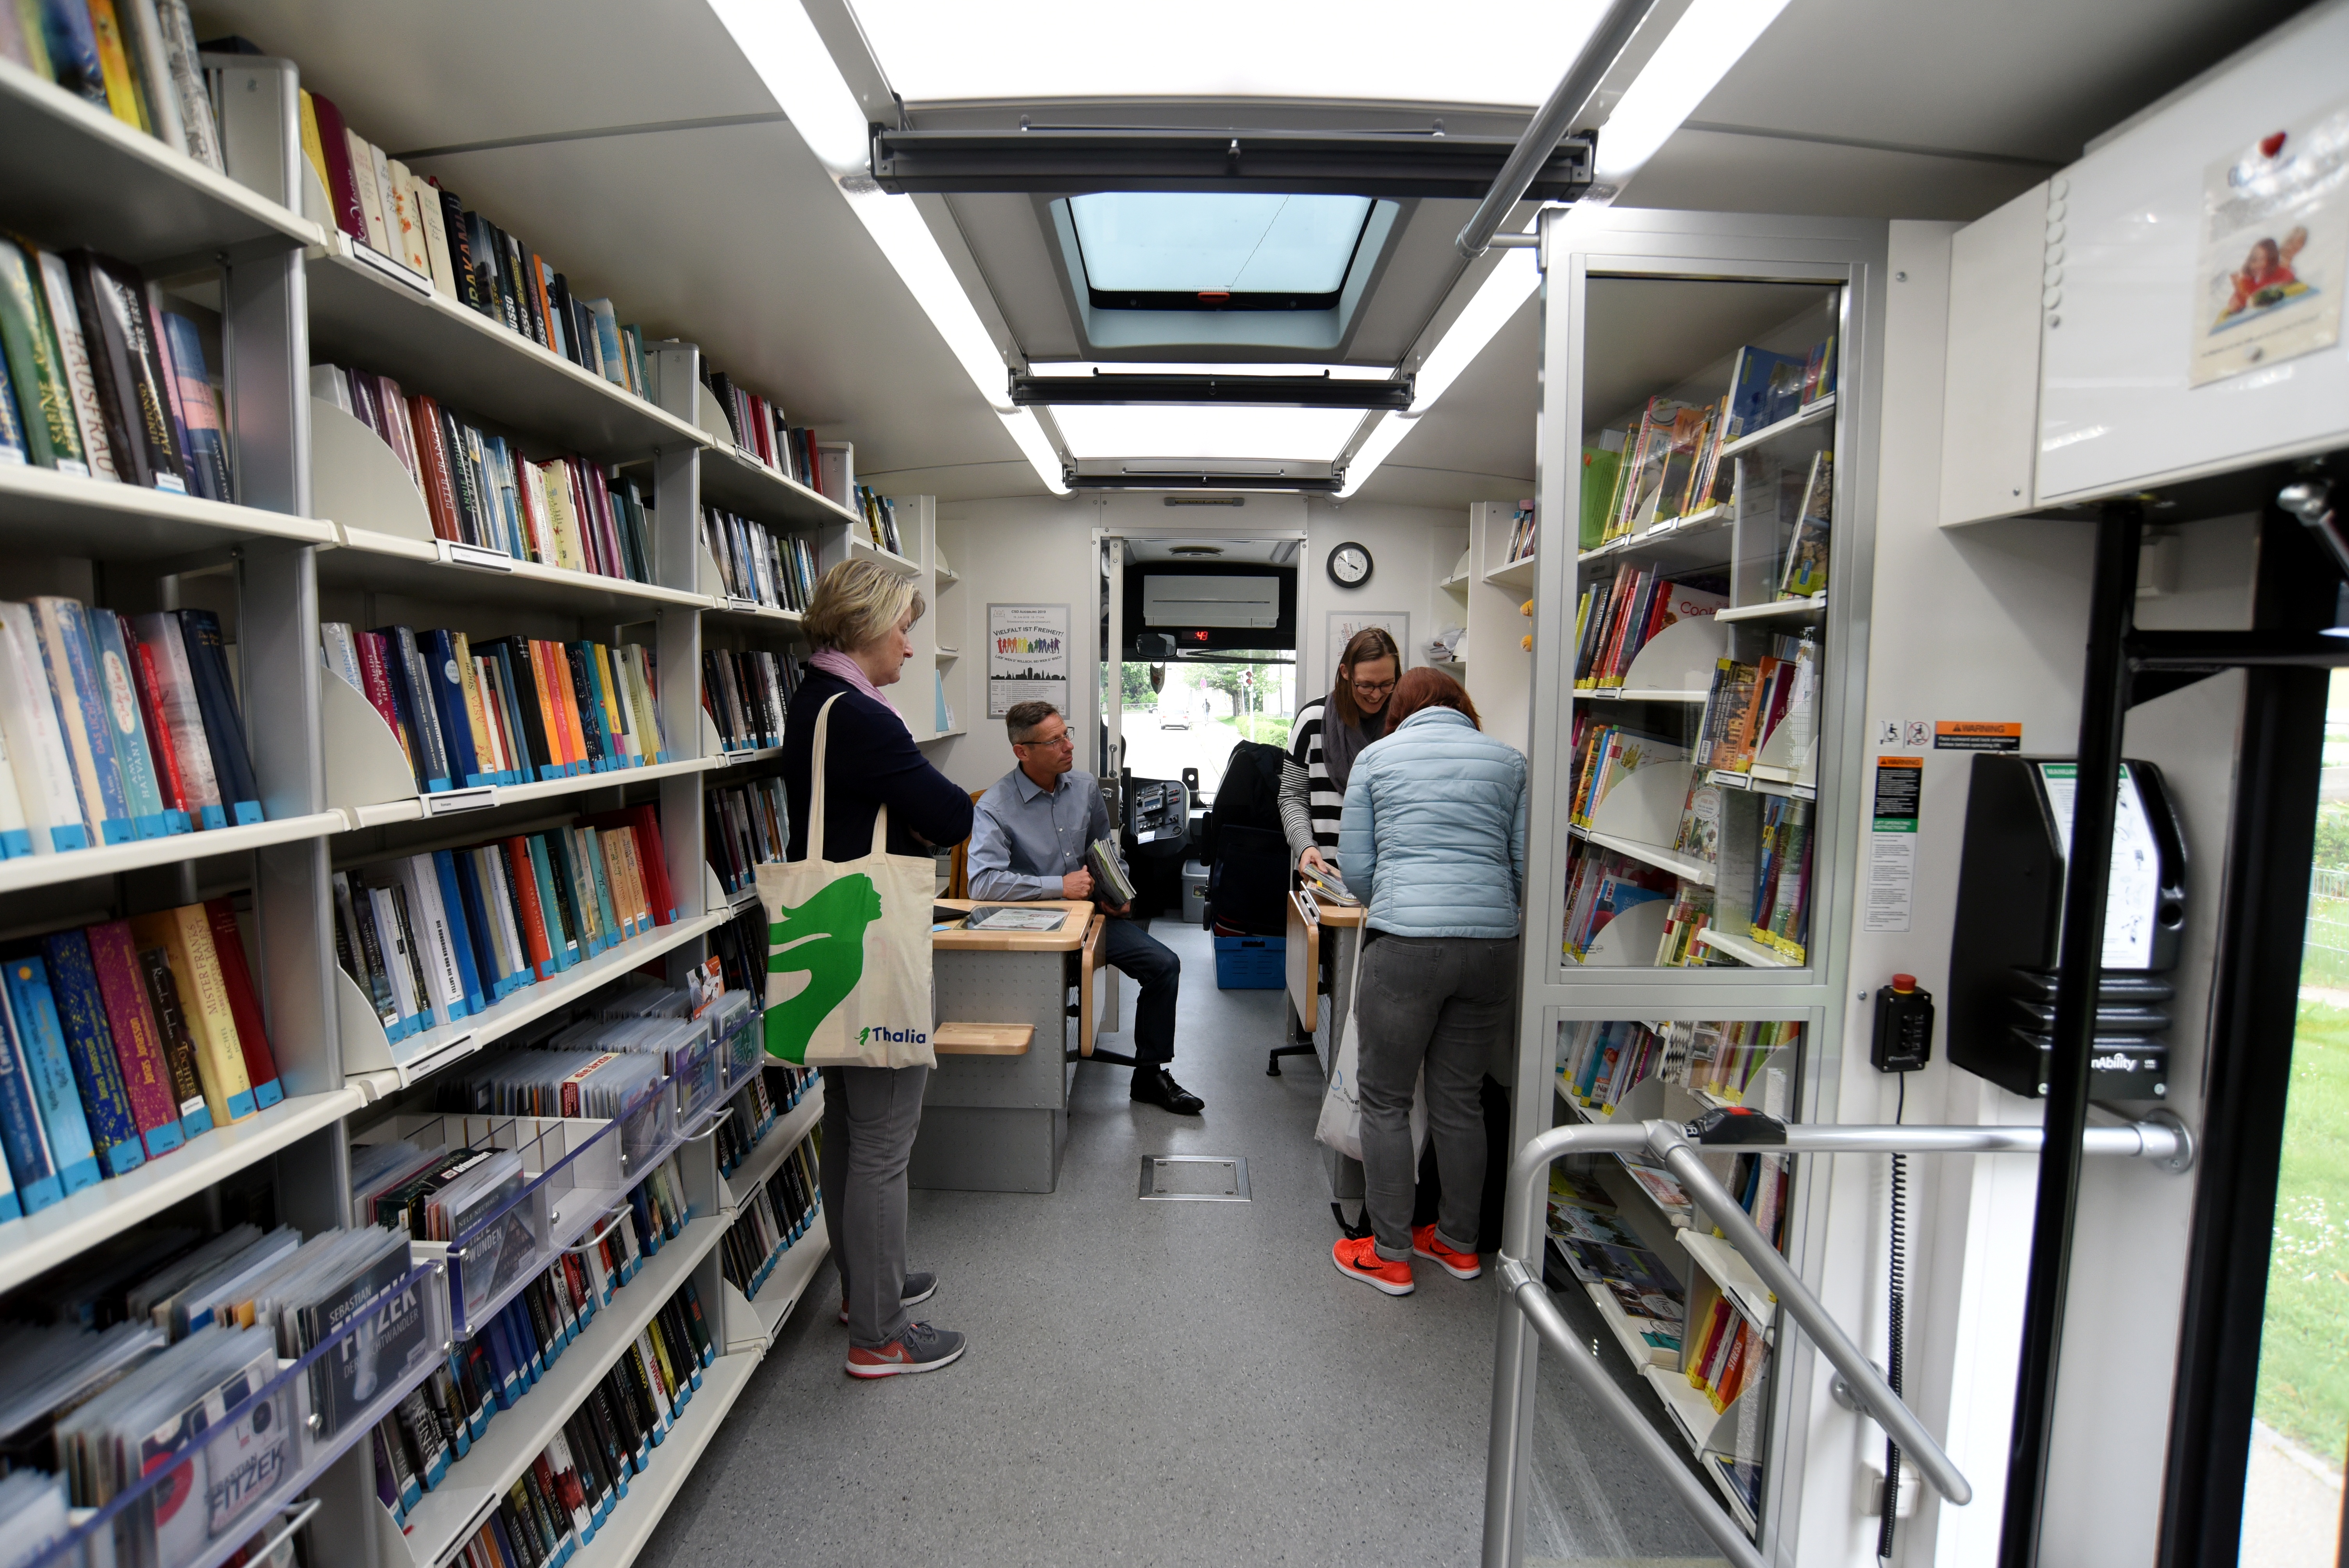 Bücherbus von innen. Vor den Regalen mit Büchern stehen mehrere Leute.